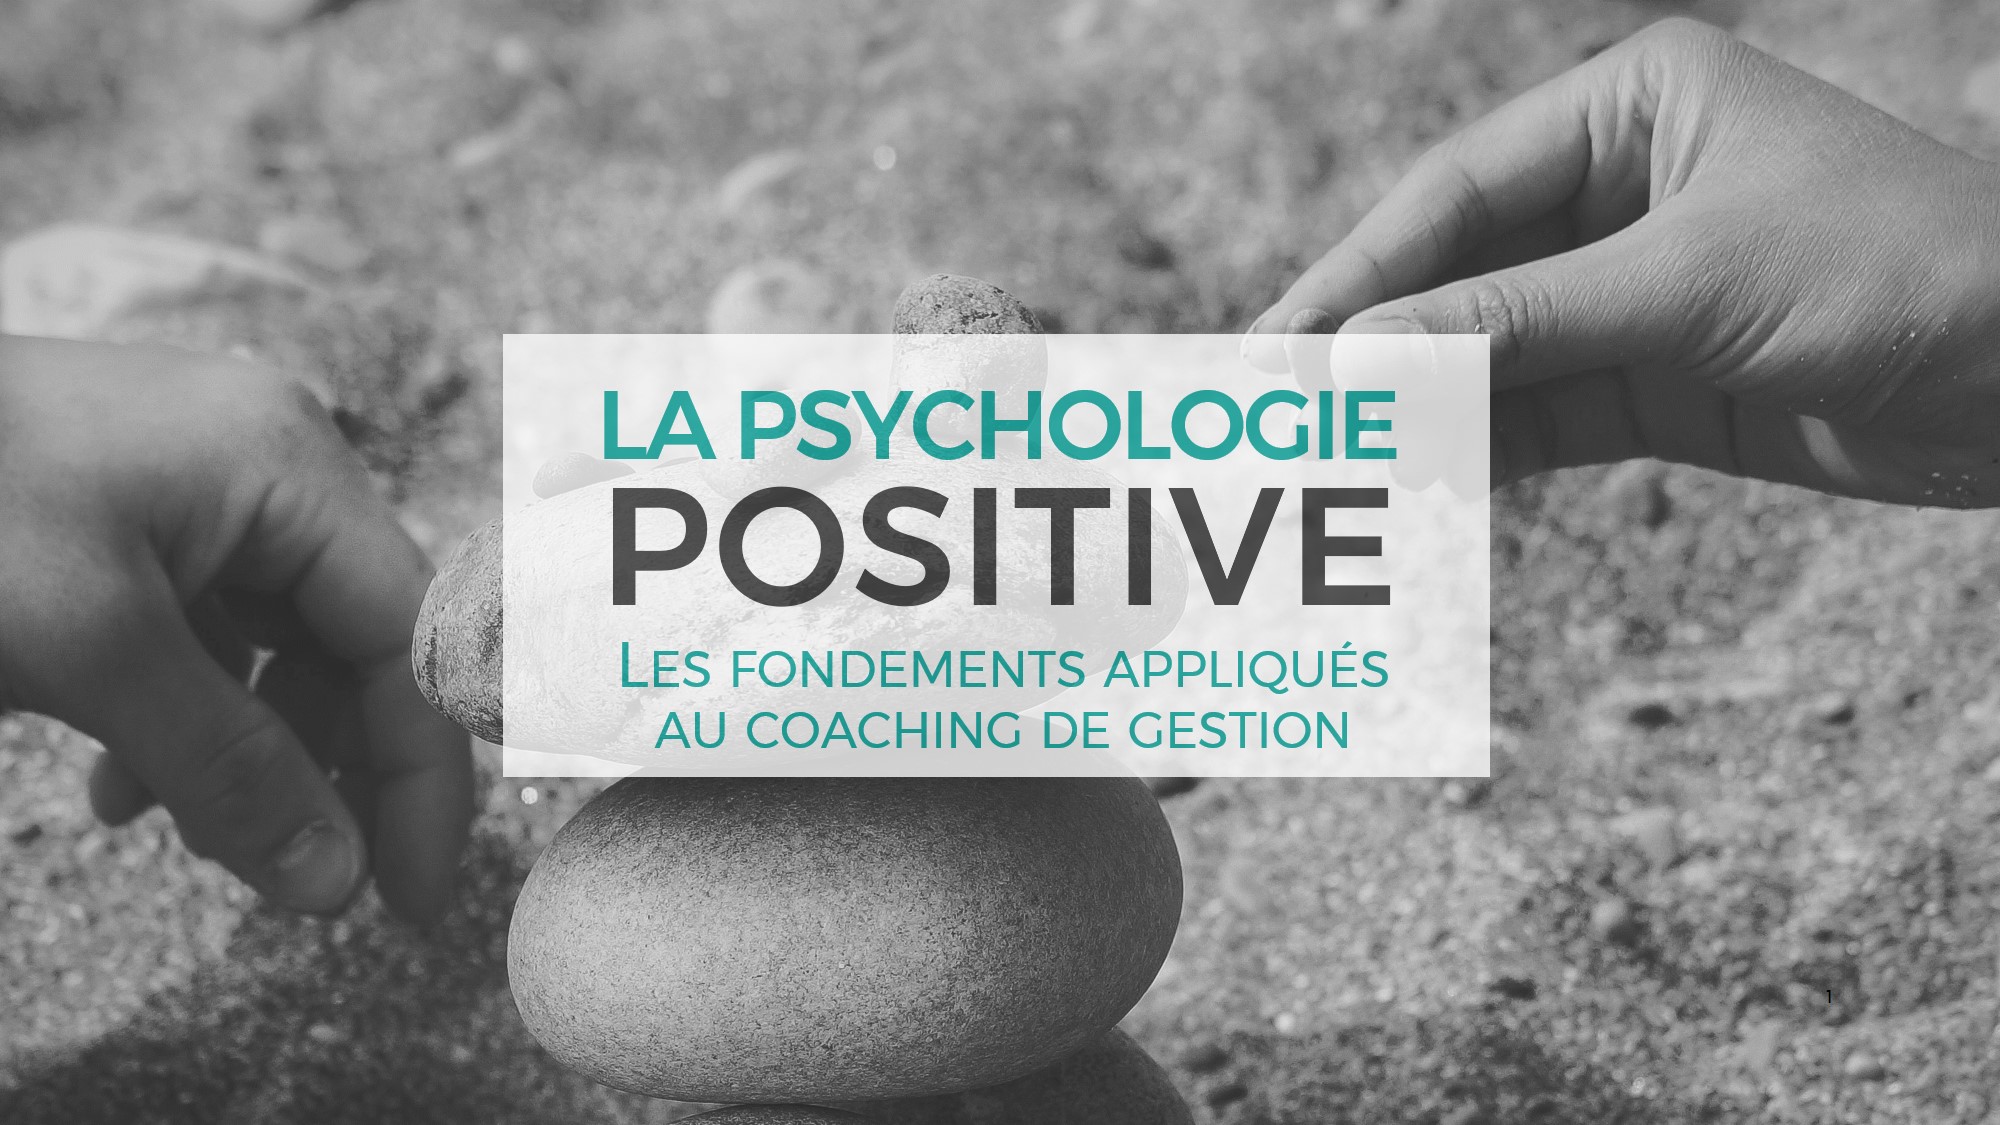 La psychologie positive : les fondements appliqués au coaching de gestion